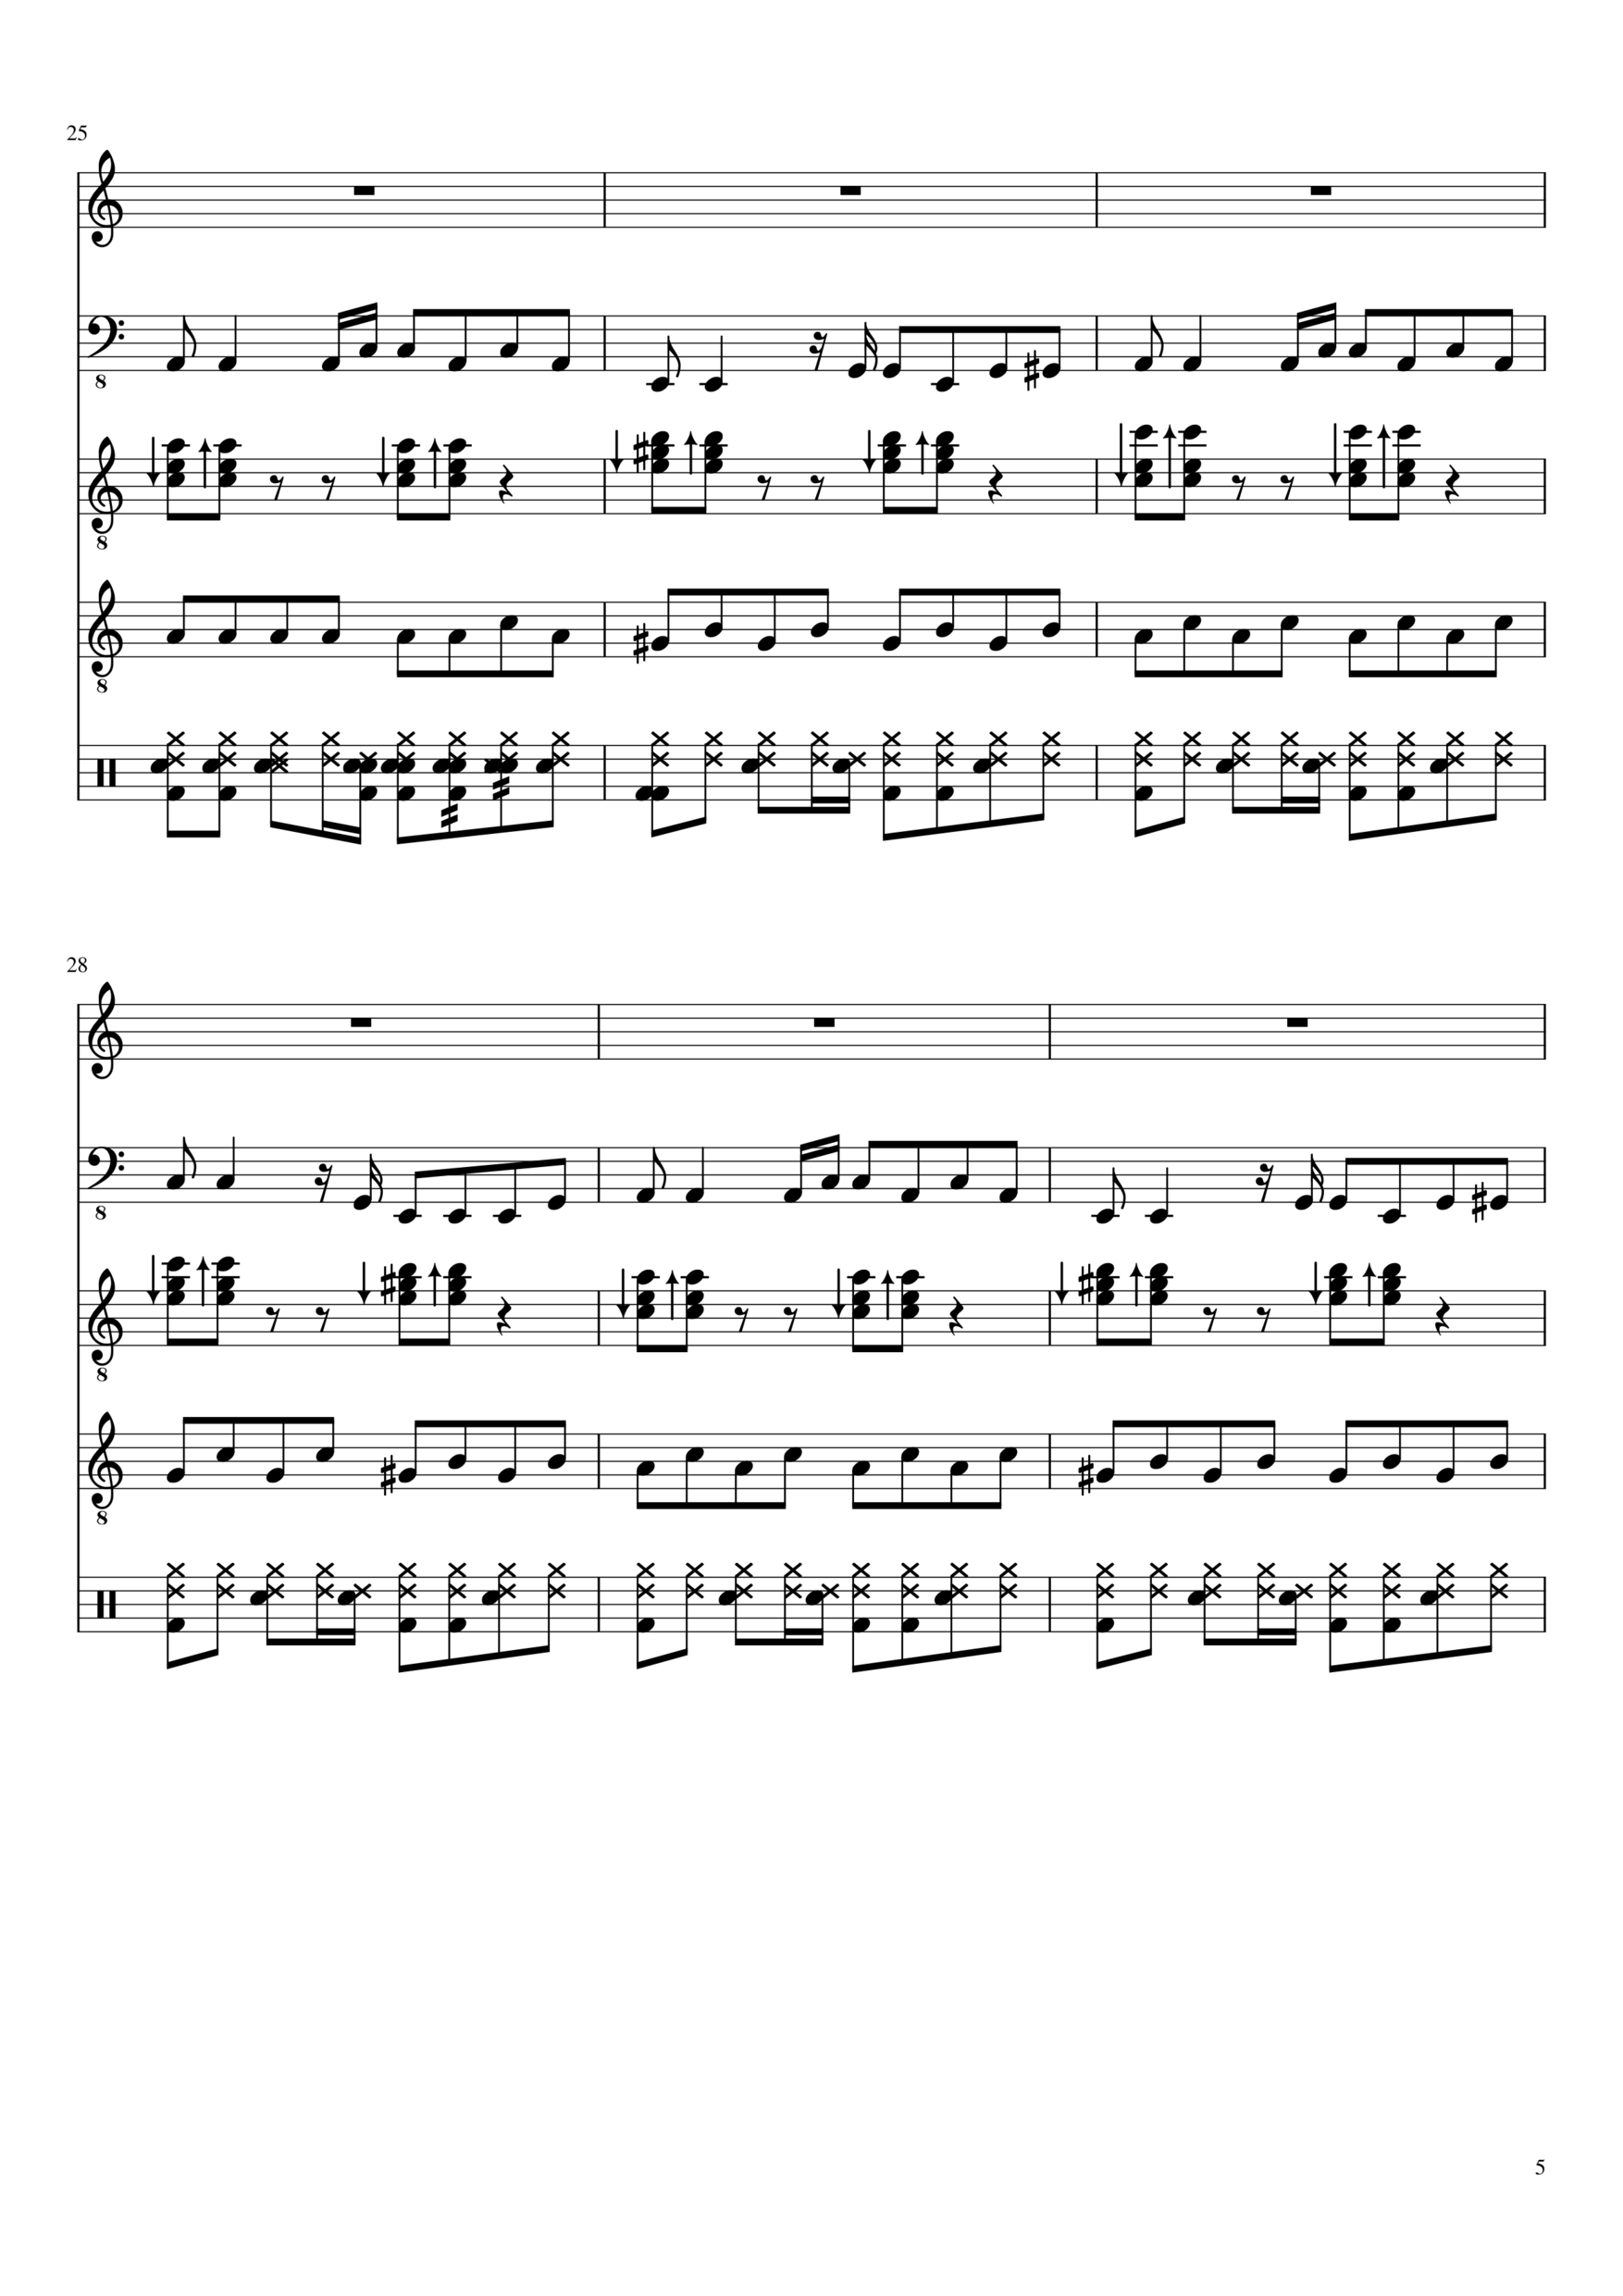 Vechnaya lyubov slide, Image 5